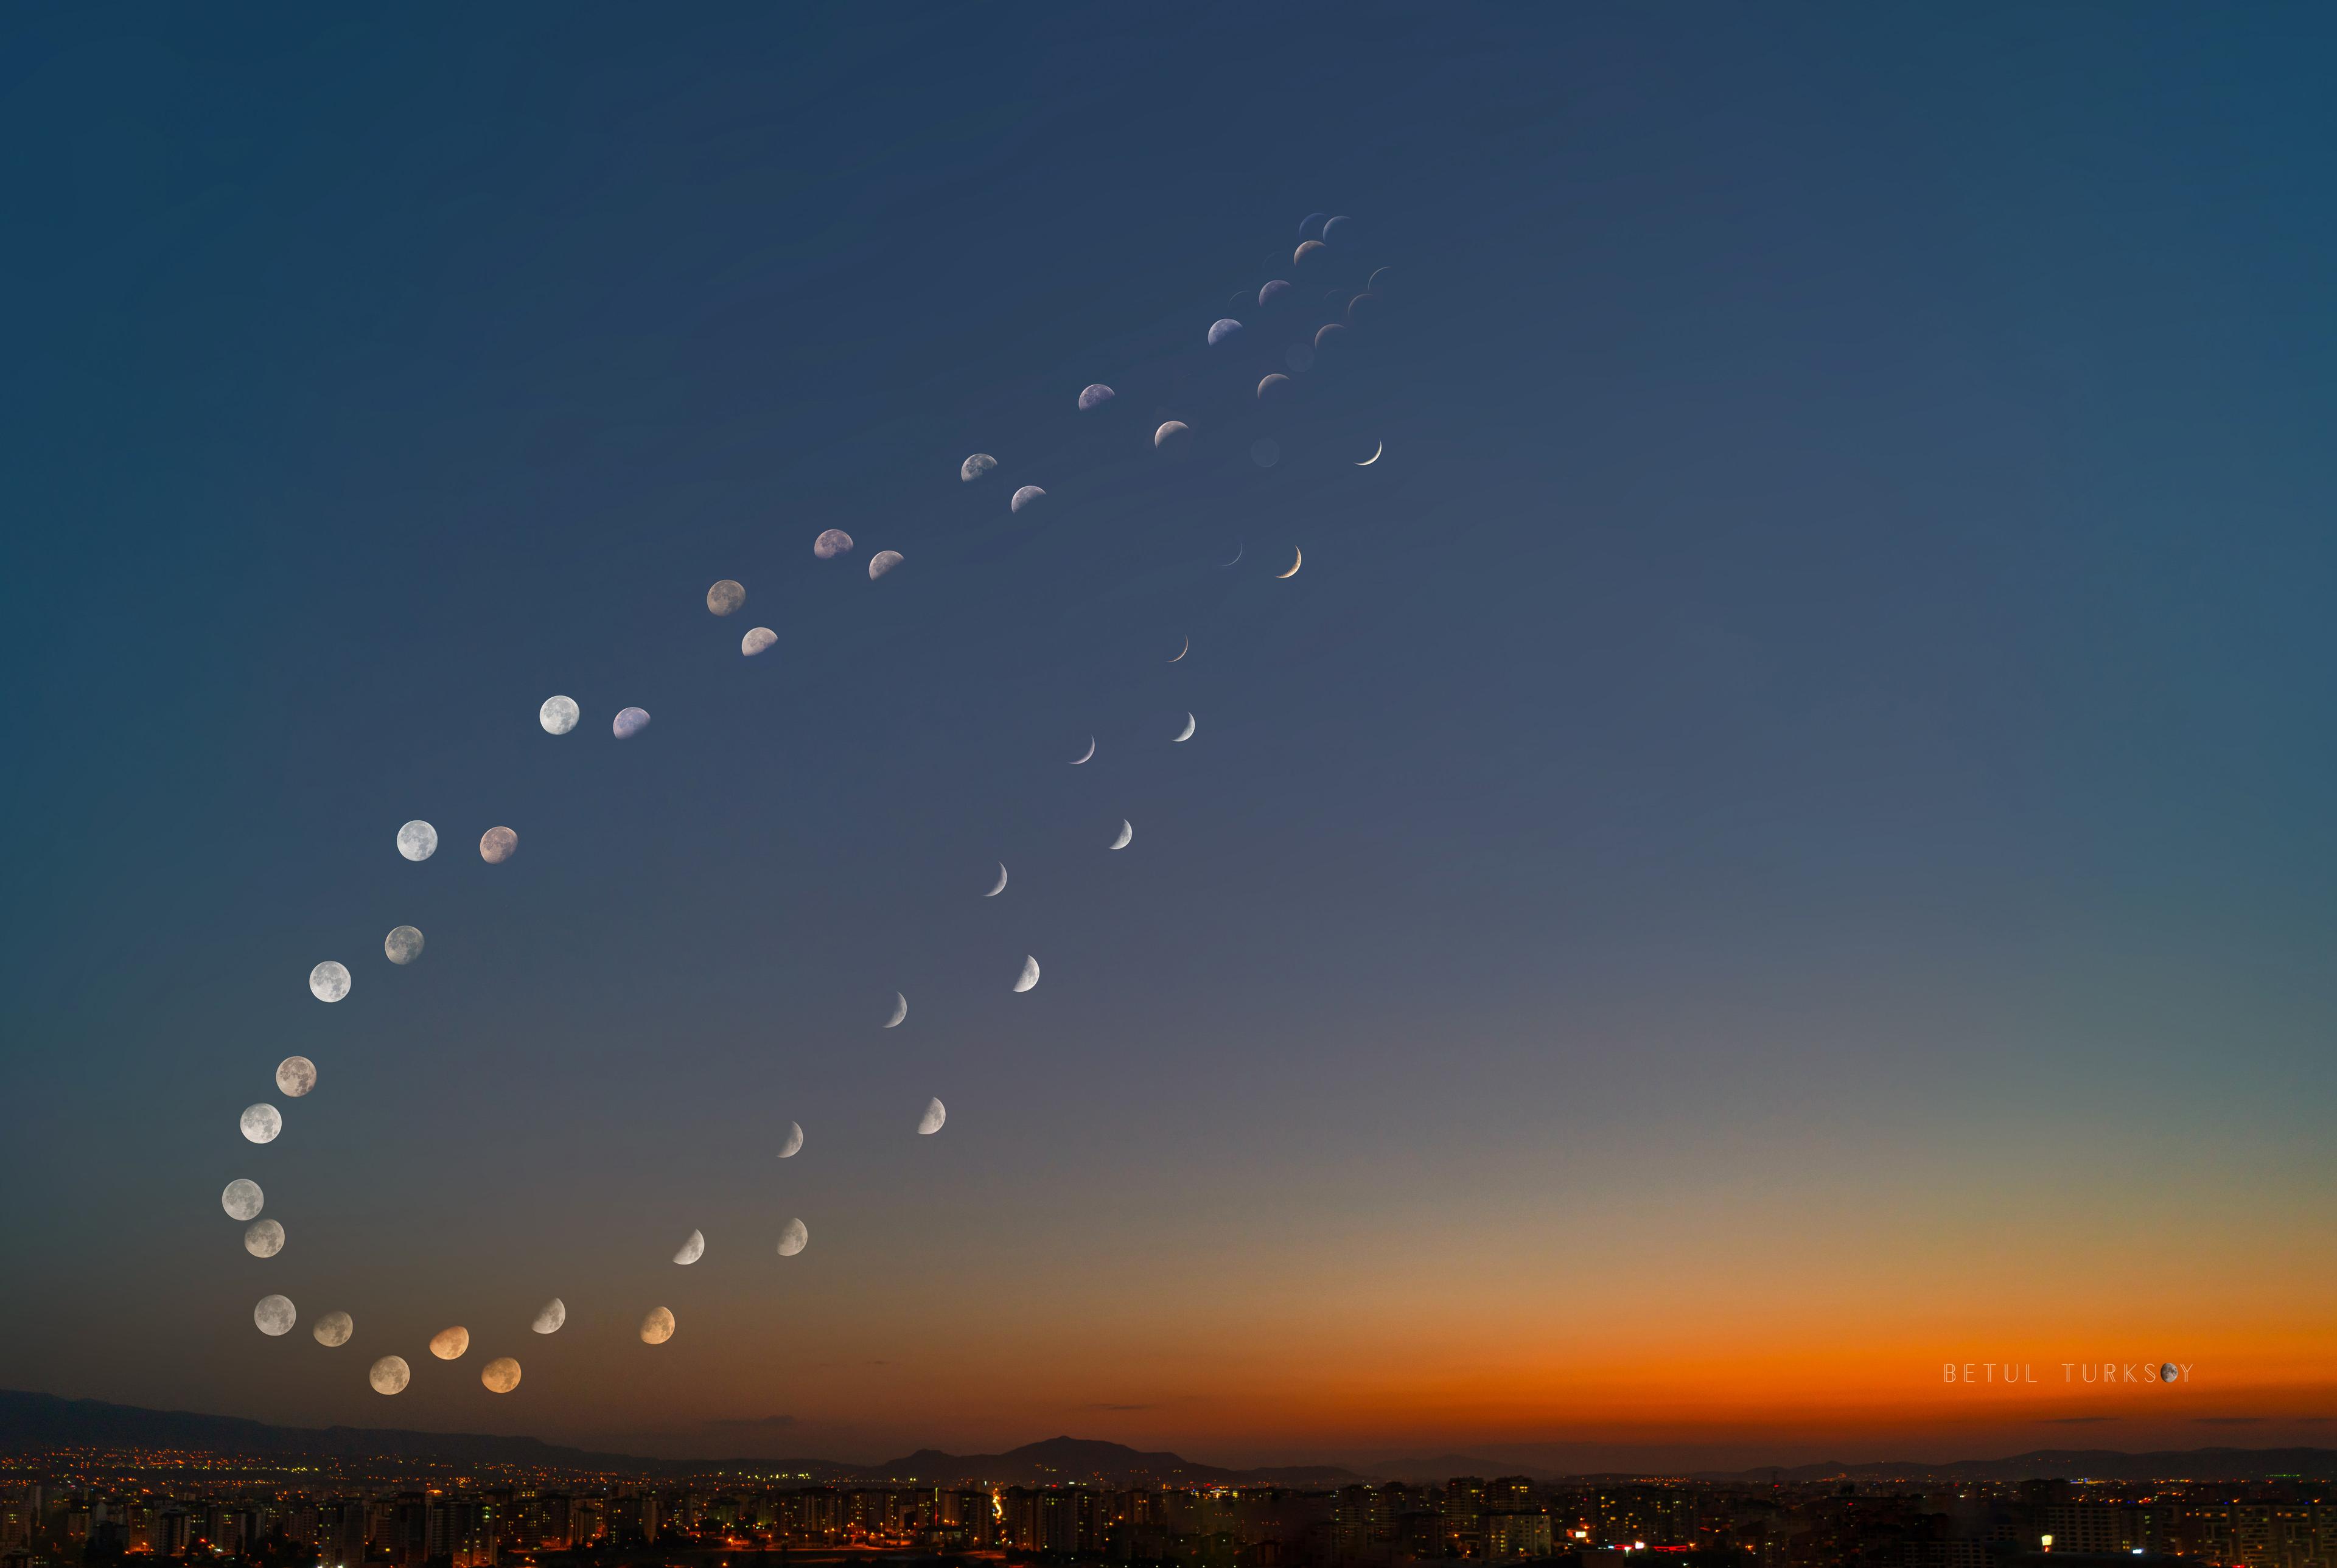 مشهد طبيعي عريض في تركيّا مع صور عديدة للقمر في أطوار مختلفة تتتبَّع شكل رقم 8 مزدوج في السماء